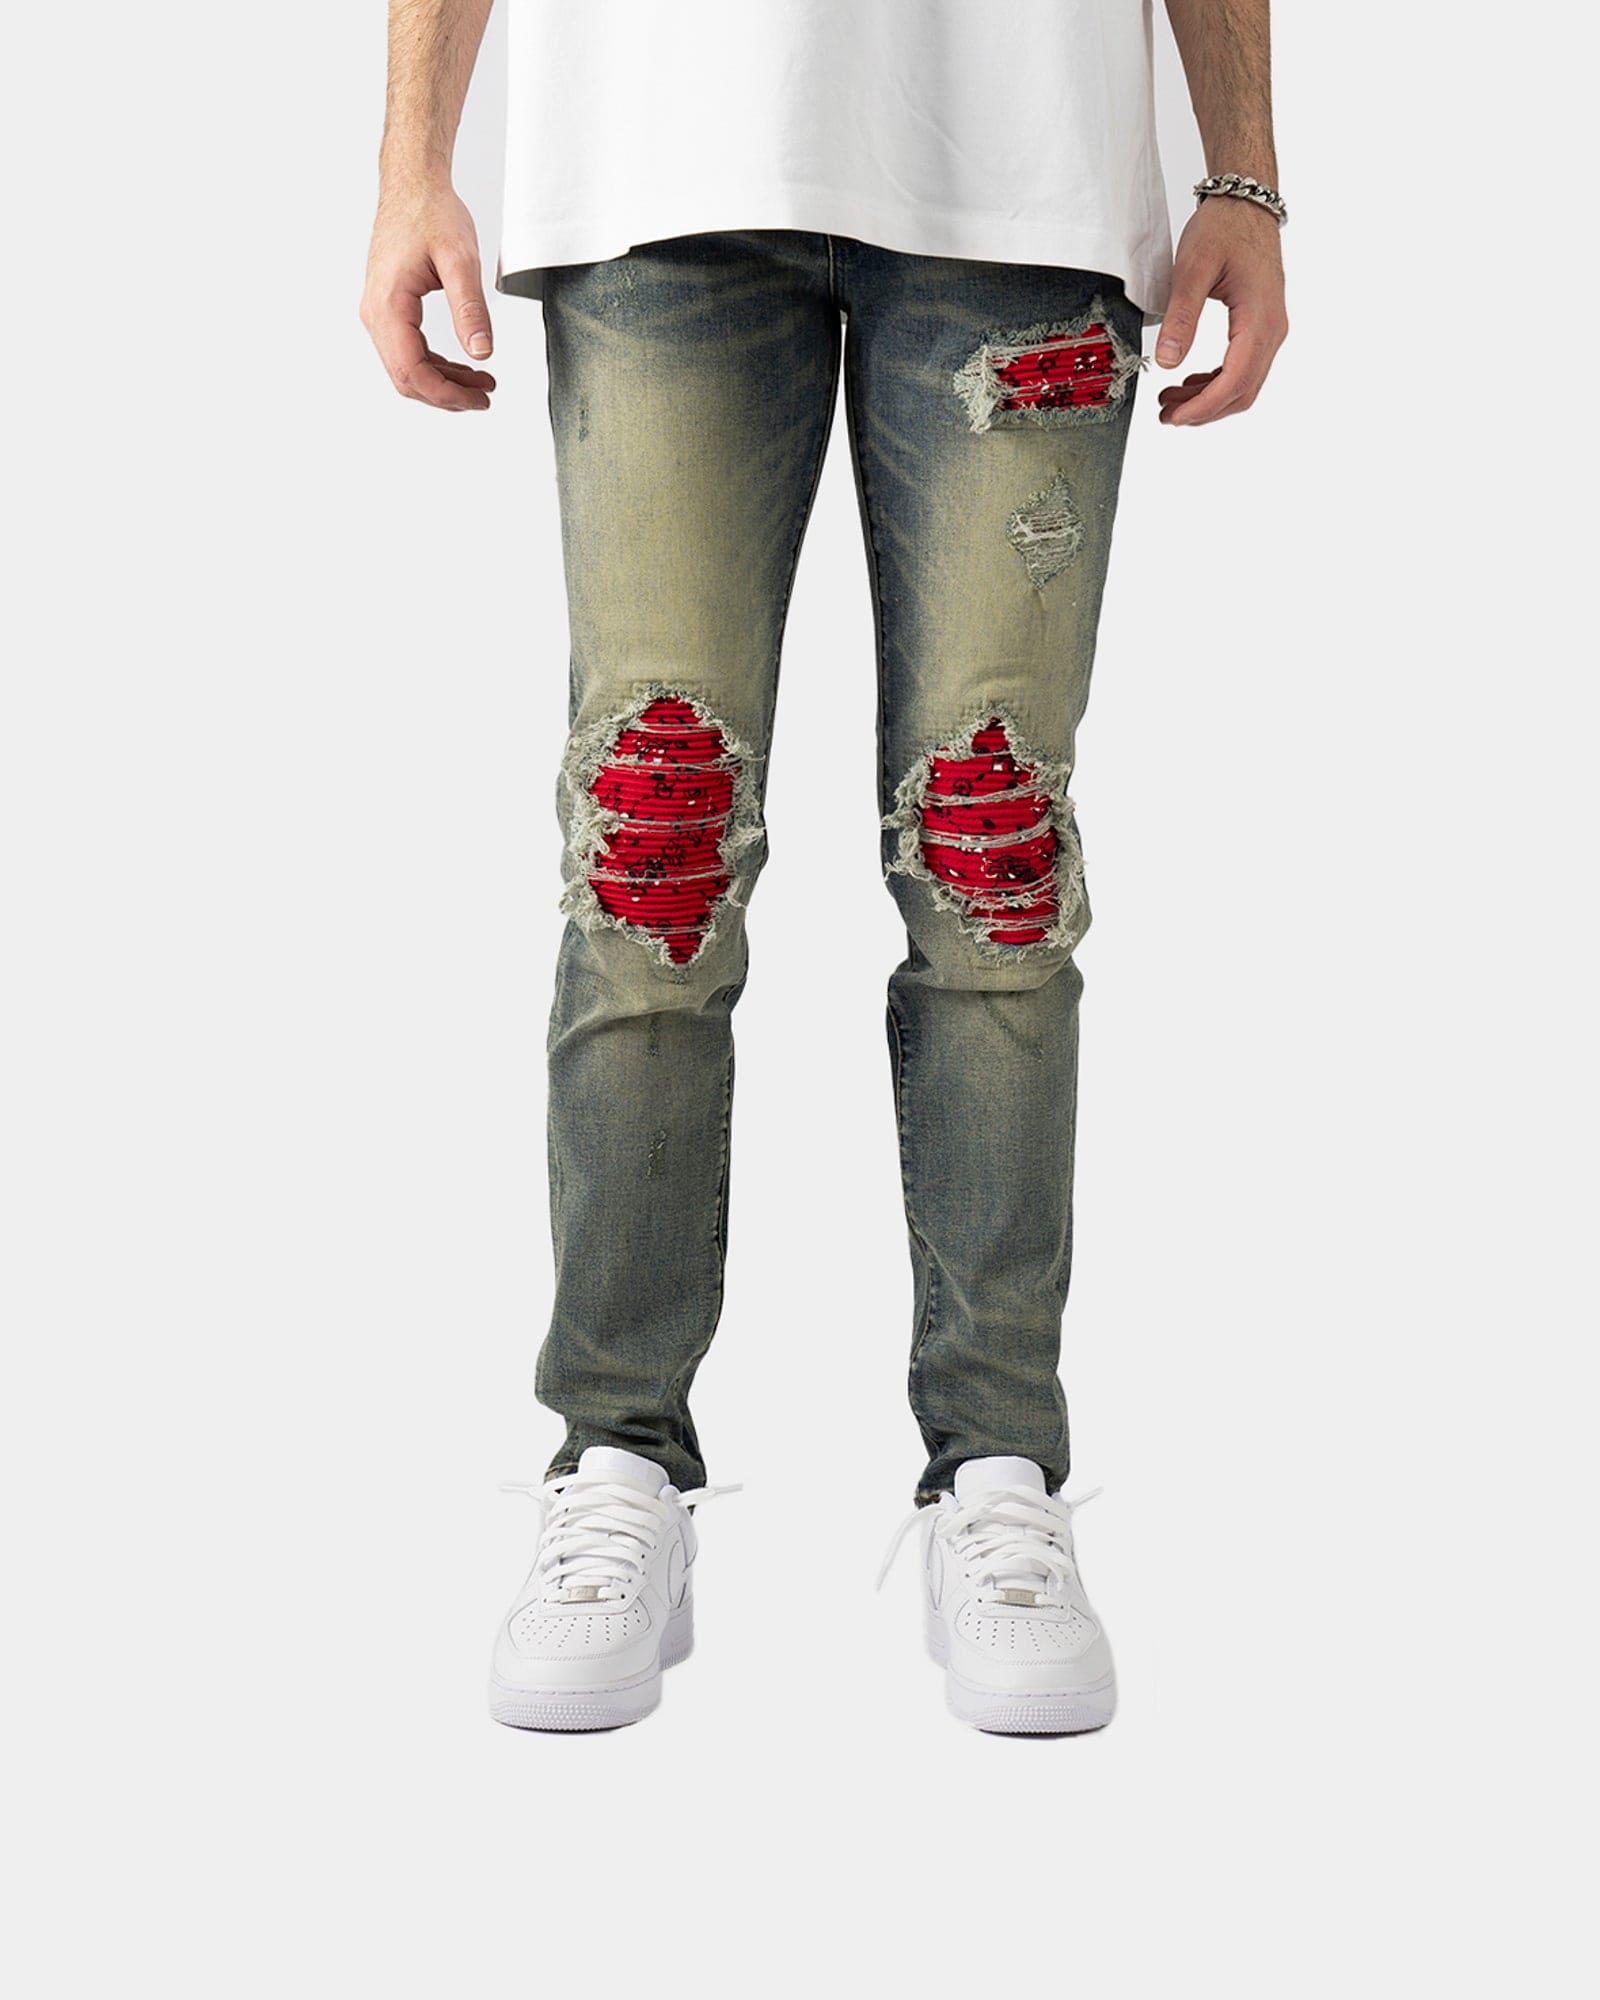 Blood Jeans